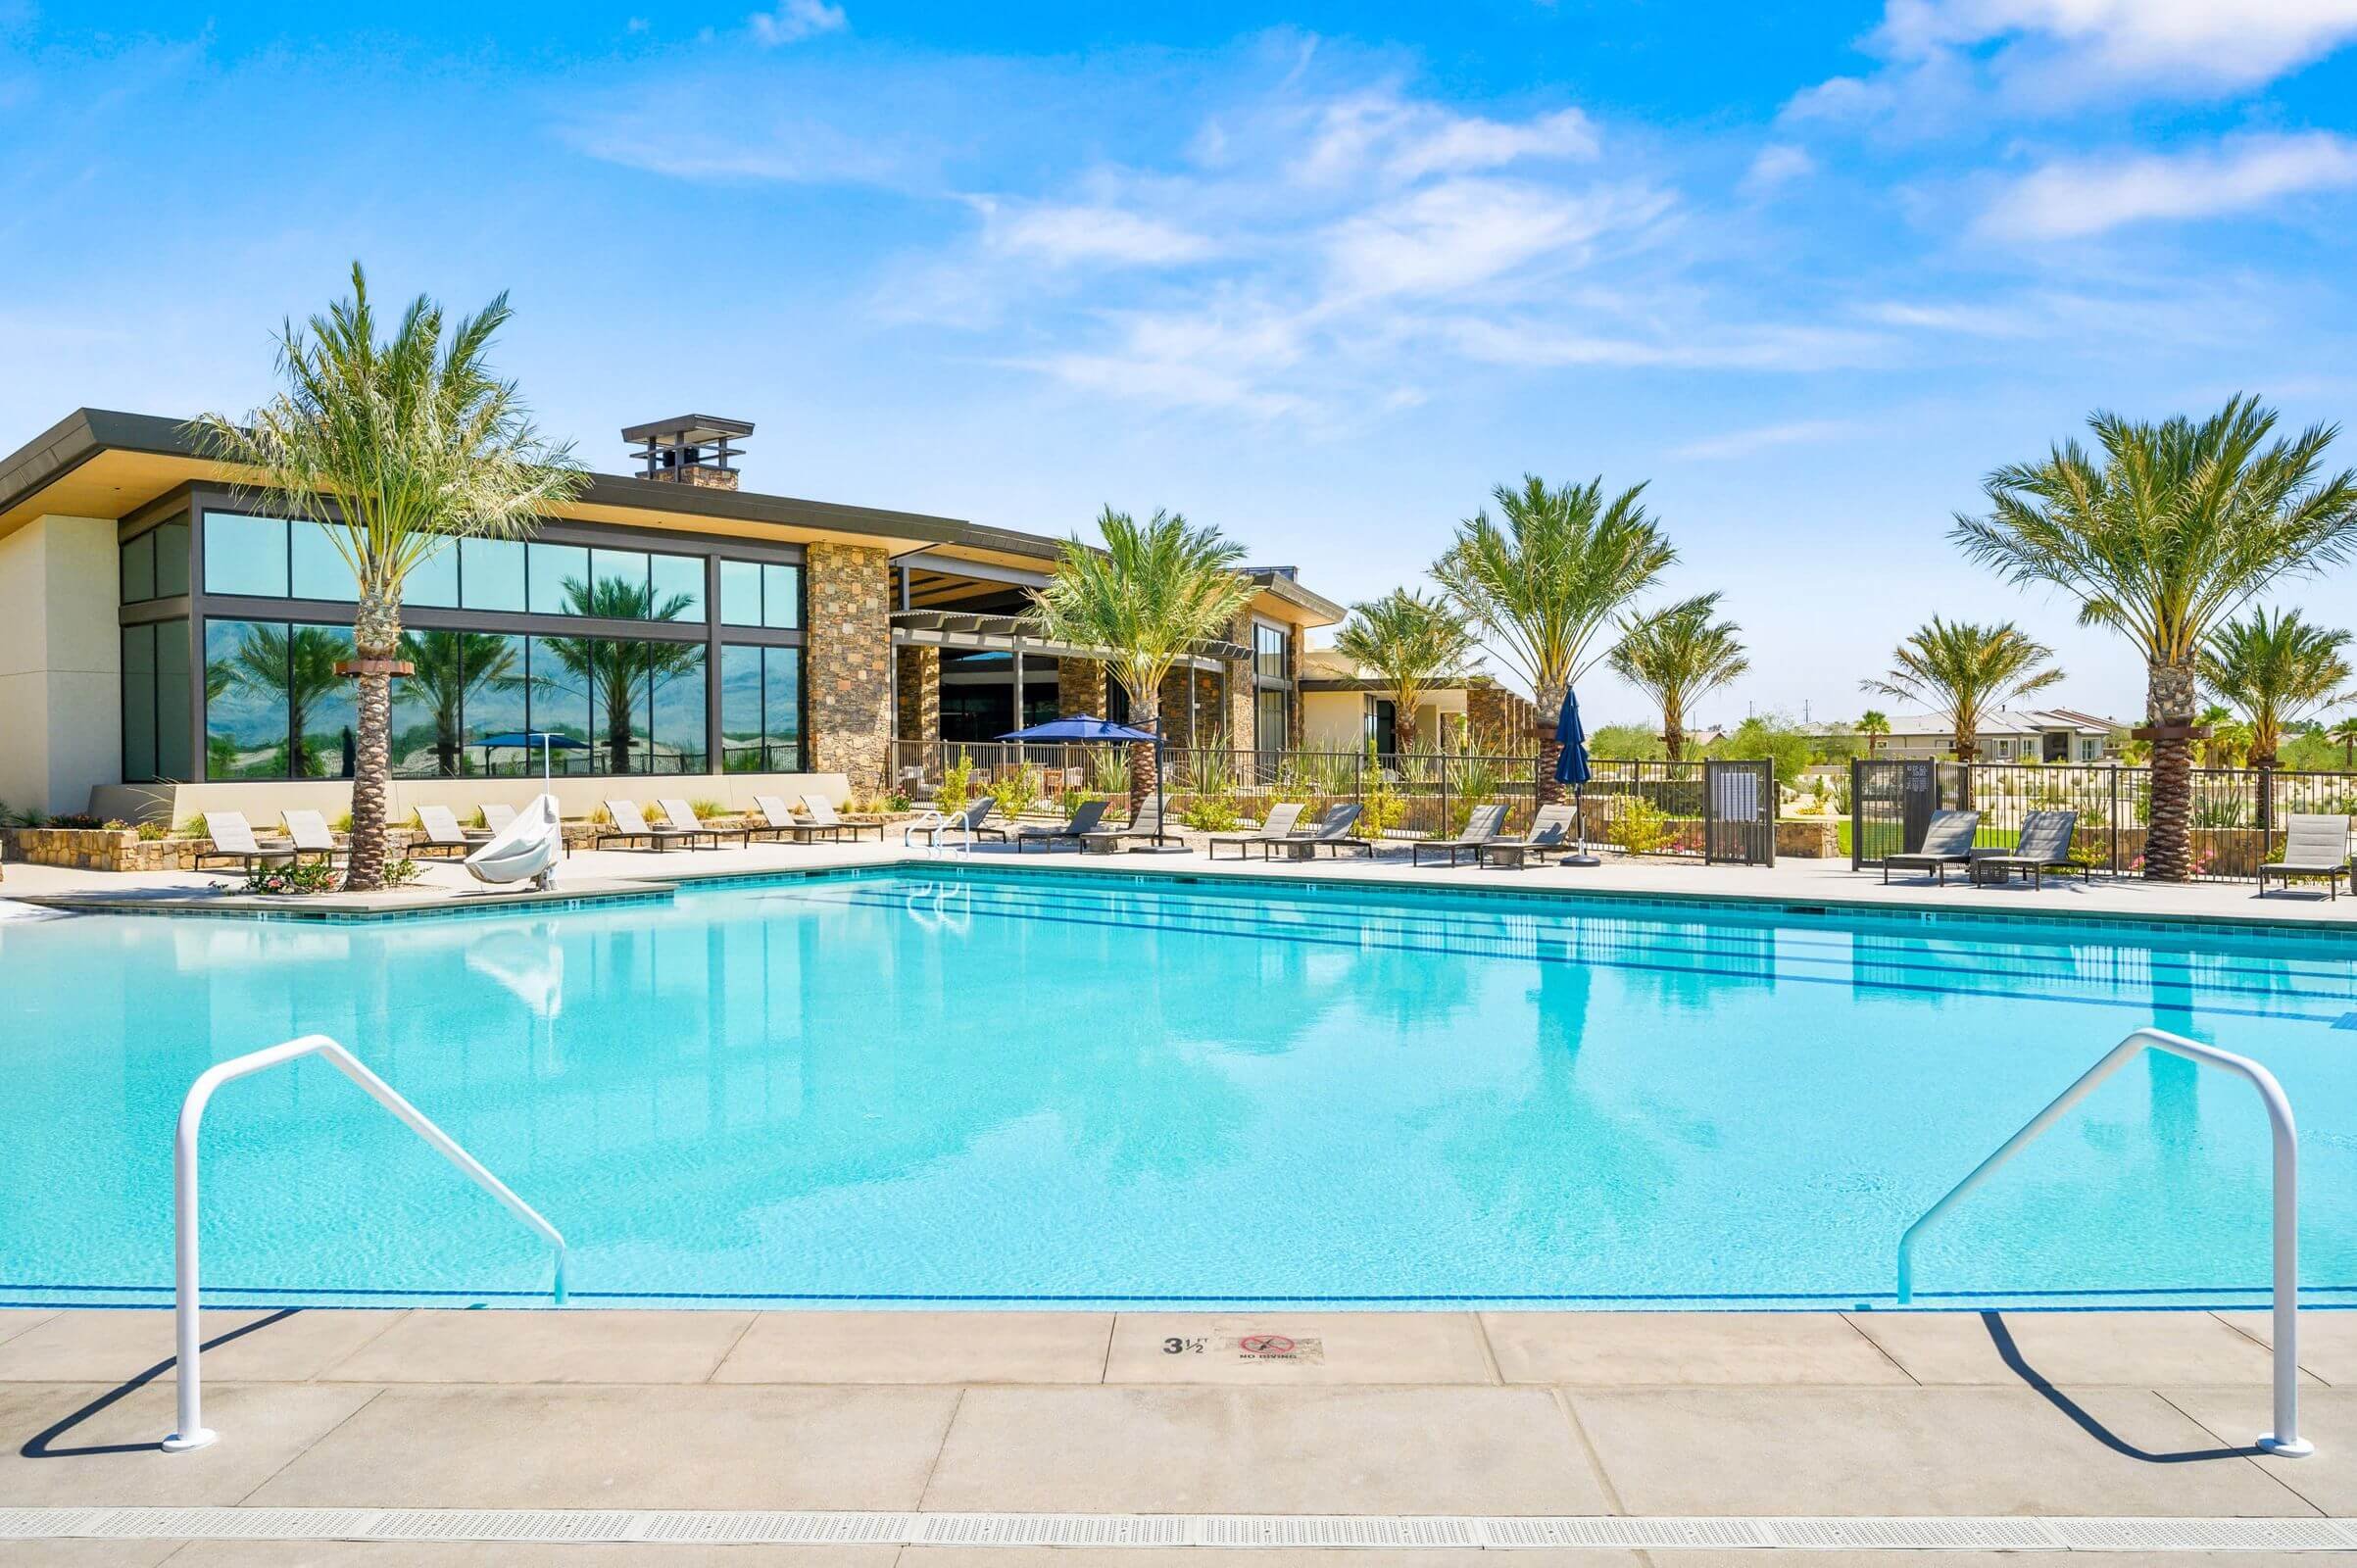 Del Webb Rancho Mirage Pool 2